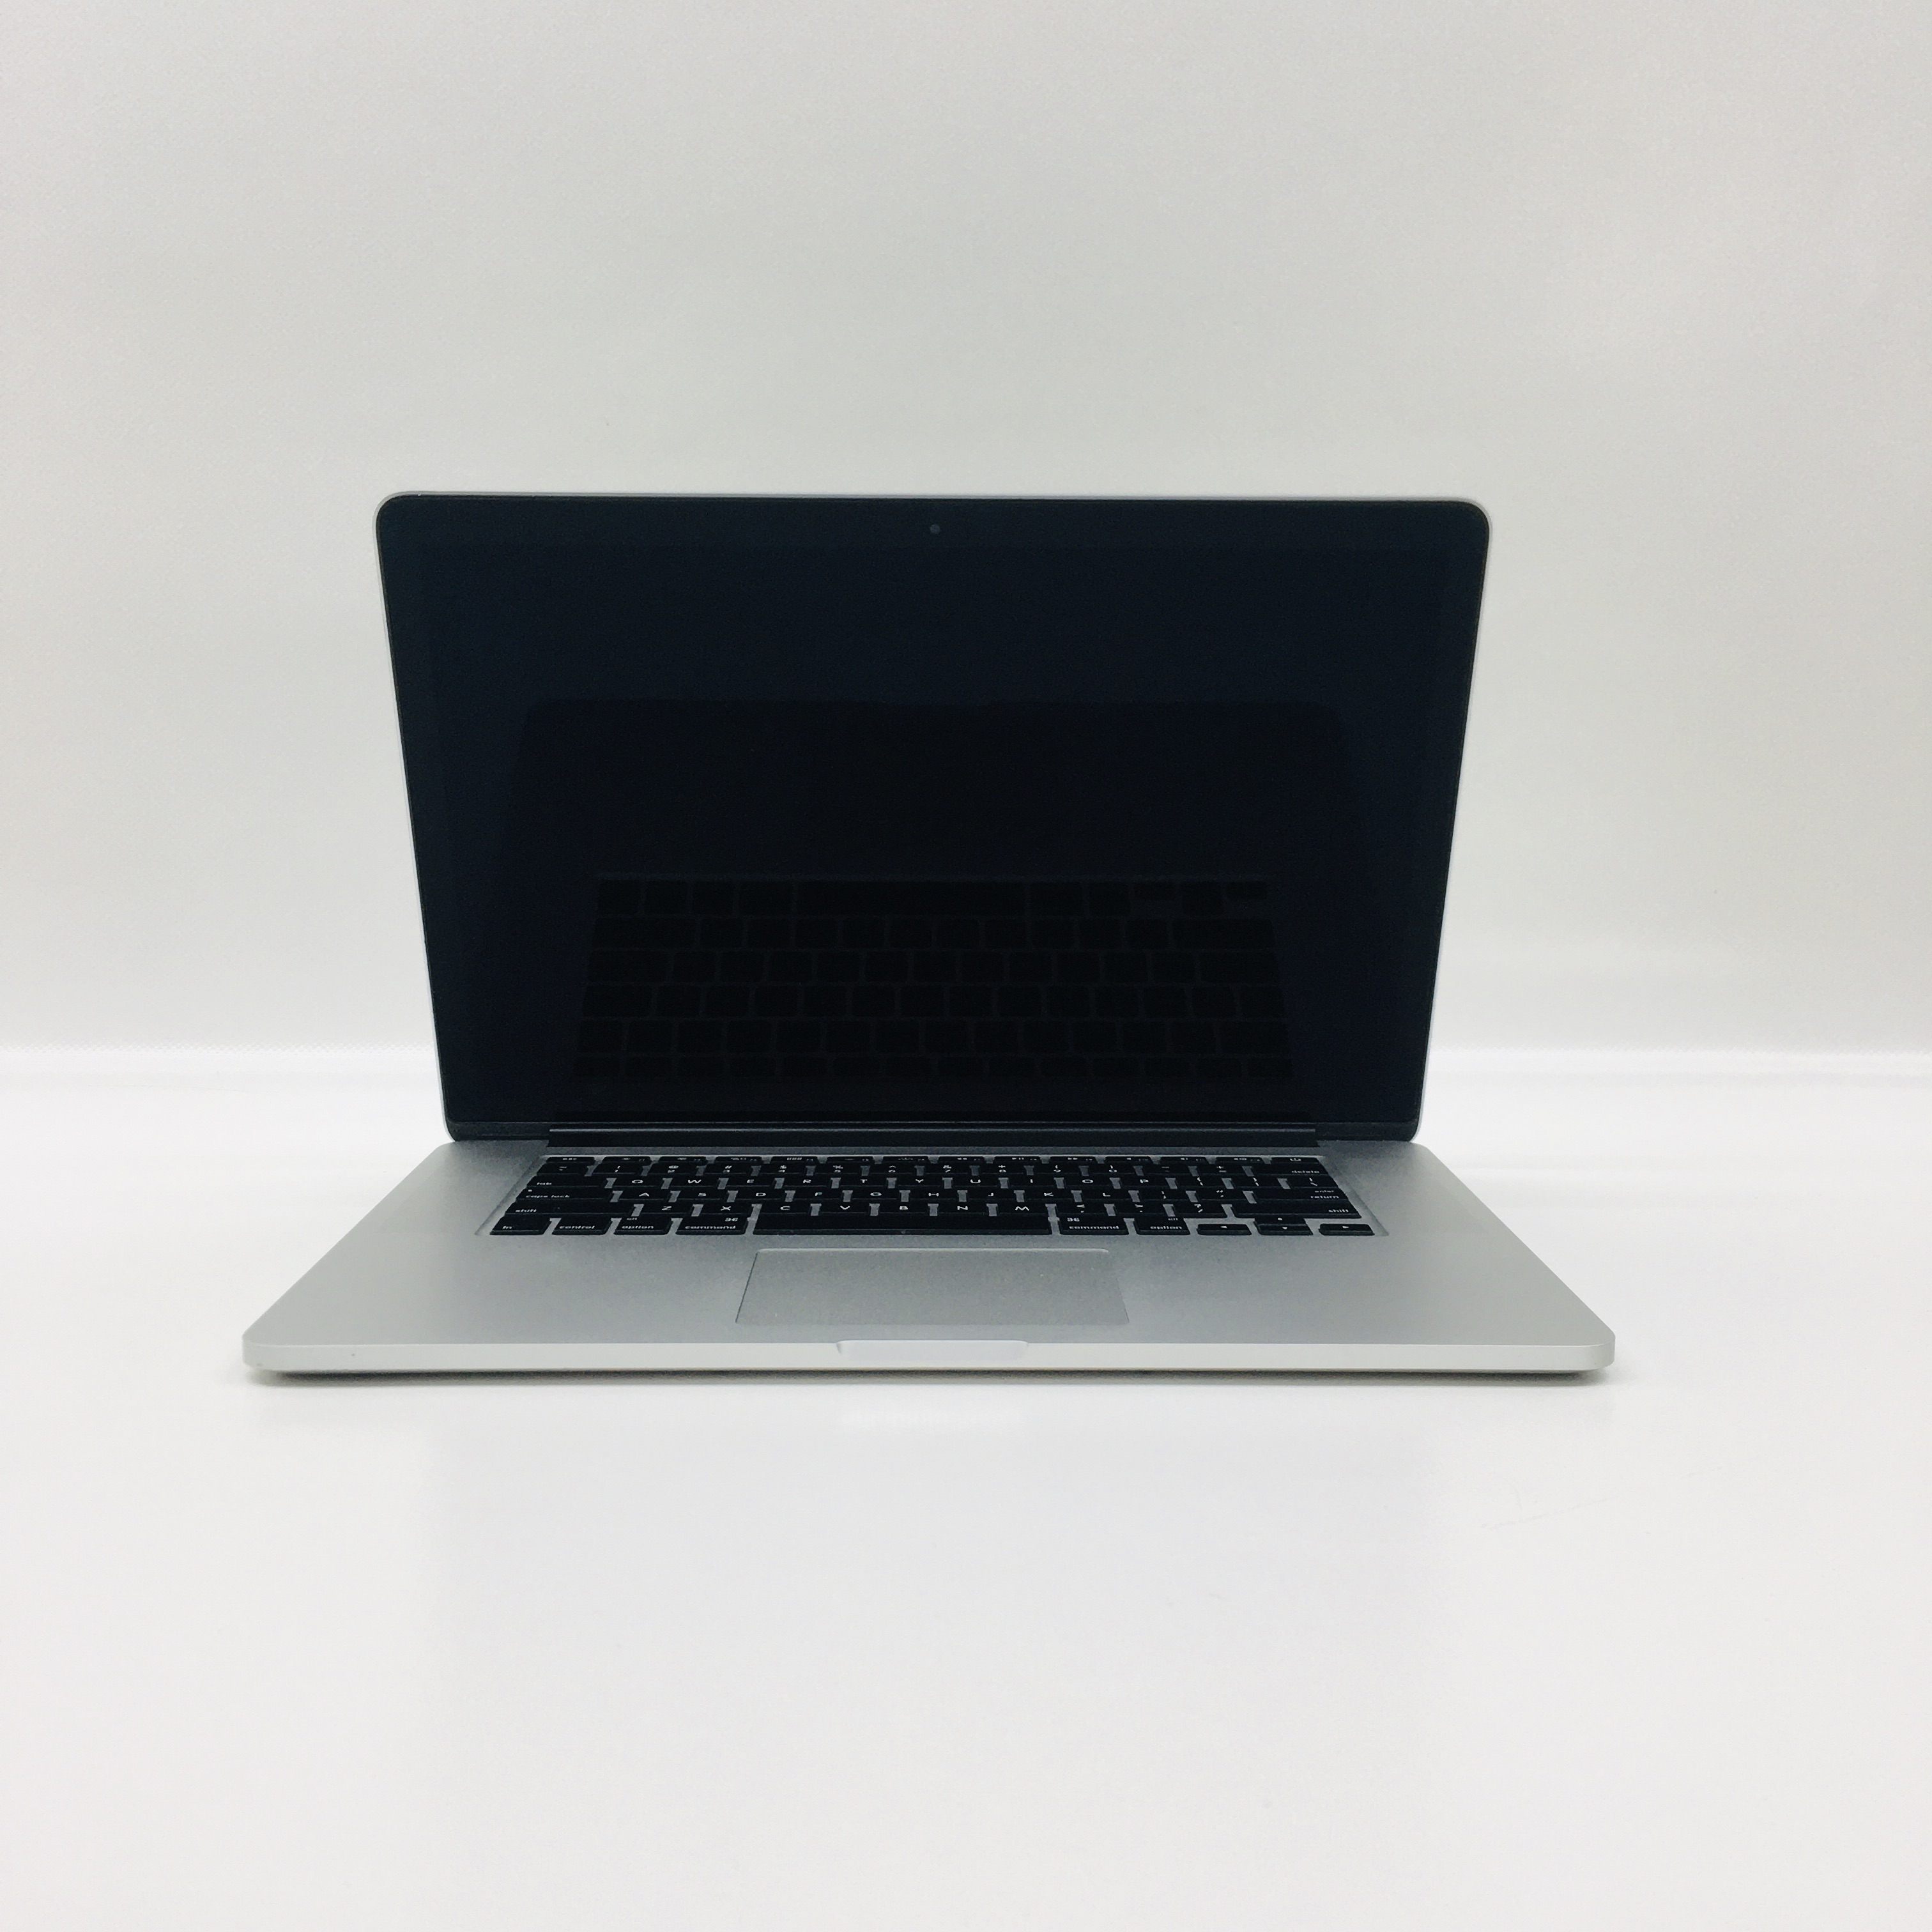 MacBook Pro Retina 15" Mid 2014 (Intel Quad-Core i7 2.5 GHz 16 GB RAM 256 GB SSD), Intel Quad-Core i7 2.5 GHz, 16 GB RAM, 256 GB SSD, image 1